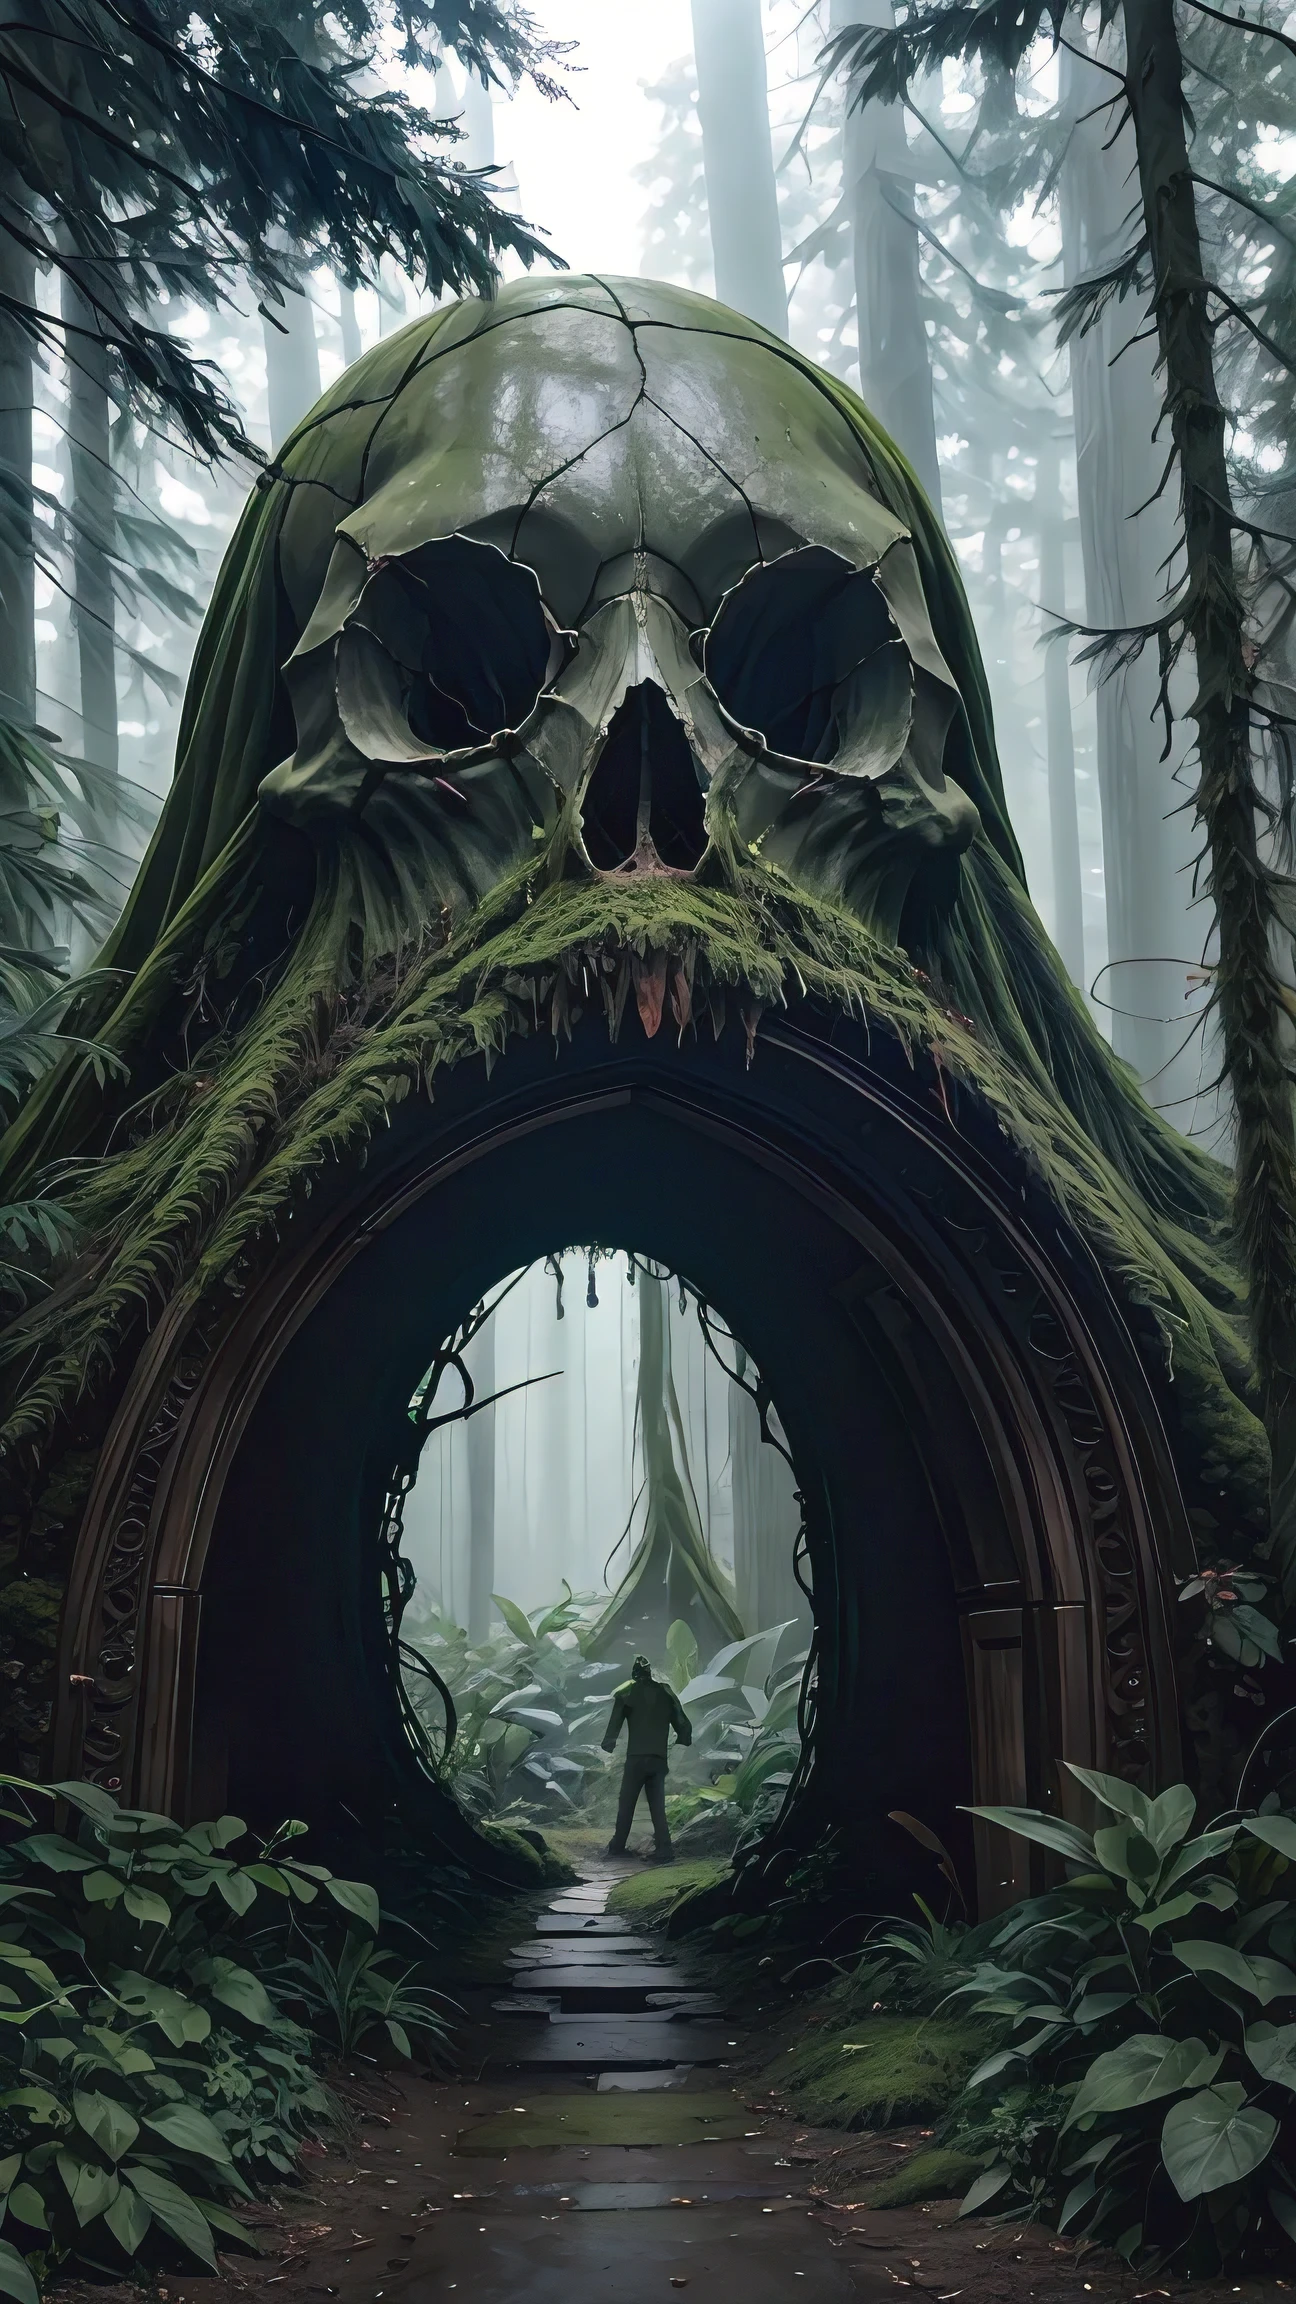 Foto de un portal en forma de calavera gigante cubierta de musgo en el bosque oscuro, Estilo cinematográfico de los hermanos Warner., místico, atmósfera psicodélica, 35mm